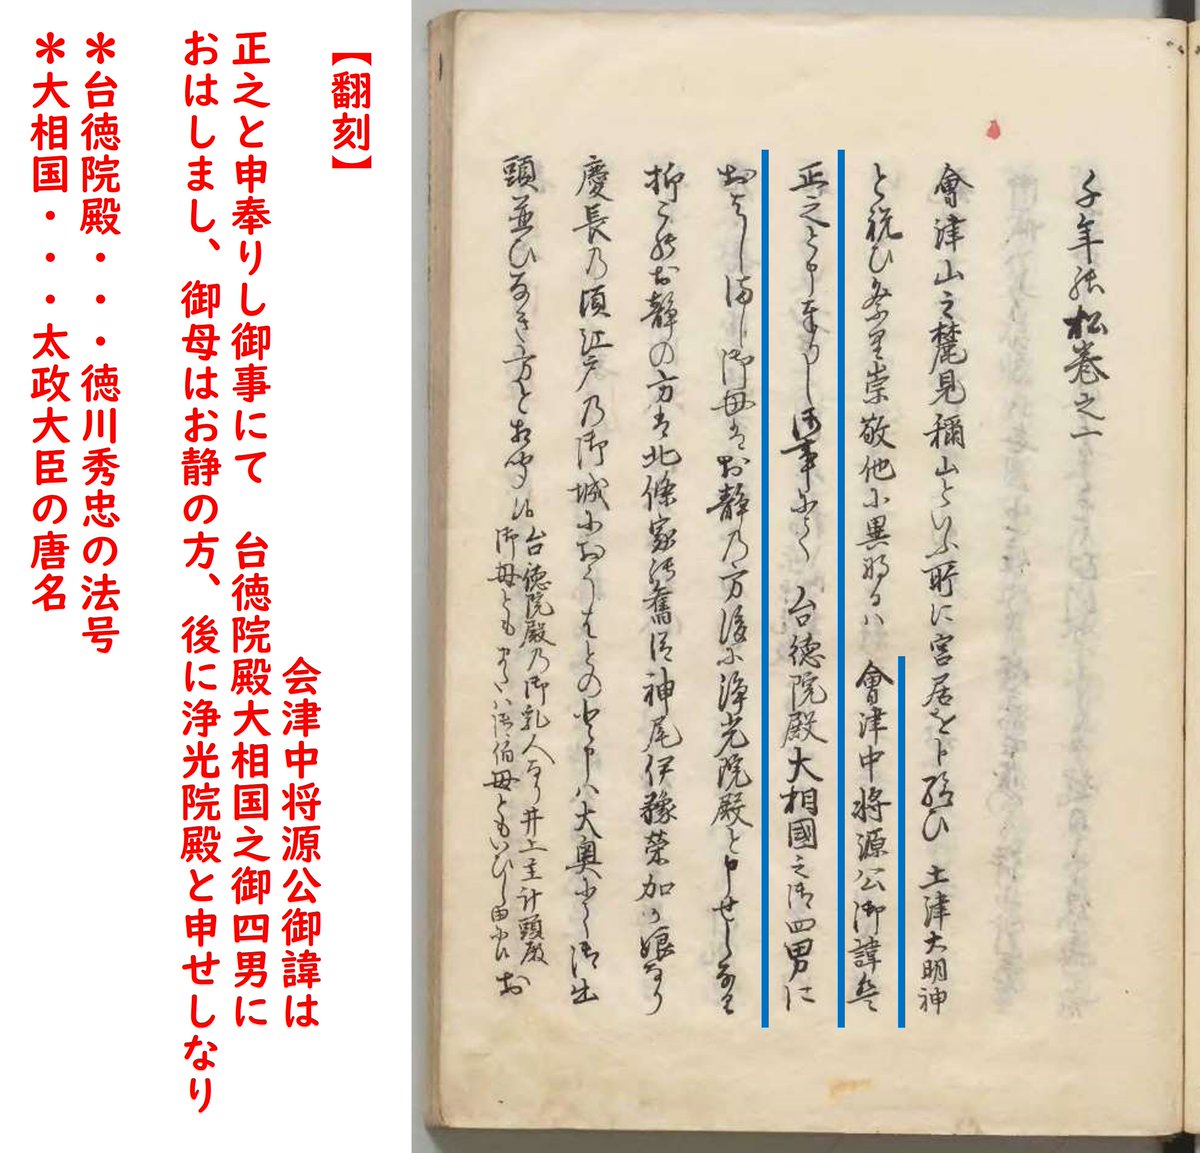 慶長16年(1611)5月7日、会津藩主として知られる保科正之が生まれました。彼は江戸幕府2代将軍徳川秀忠の4男で、保科氏の養子となりました。画像は『千年の松』より。同書は彼の事績や言行をまとめた書です。詳しくはデジタル展示「歴史と物語」で！digital.archives.go.jp/img/3930515/5 archives.go.jp/exhibition/dig…